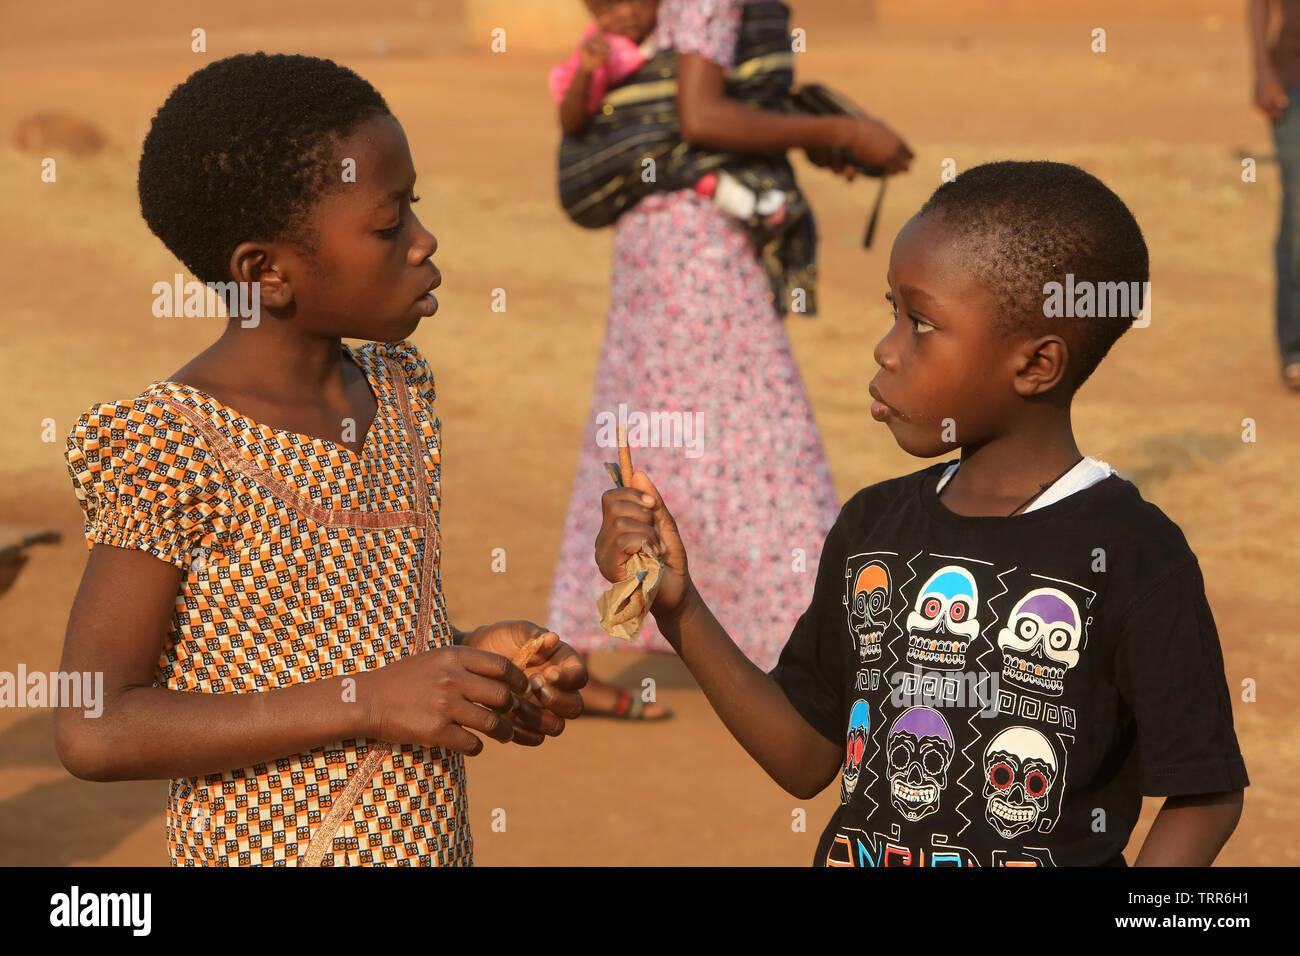 Jeunes enfants togolais discutant. Atakpamé. Togo. Afrique de l'Ouest. Stockfoto